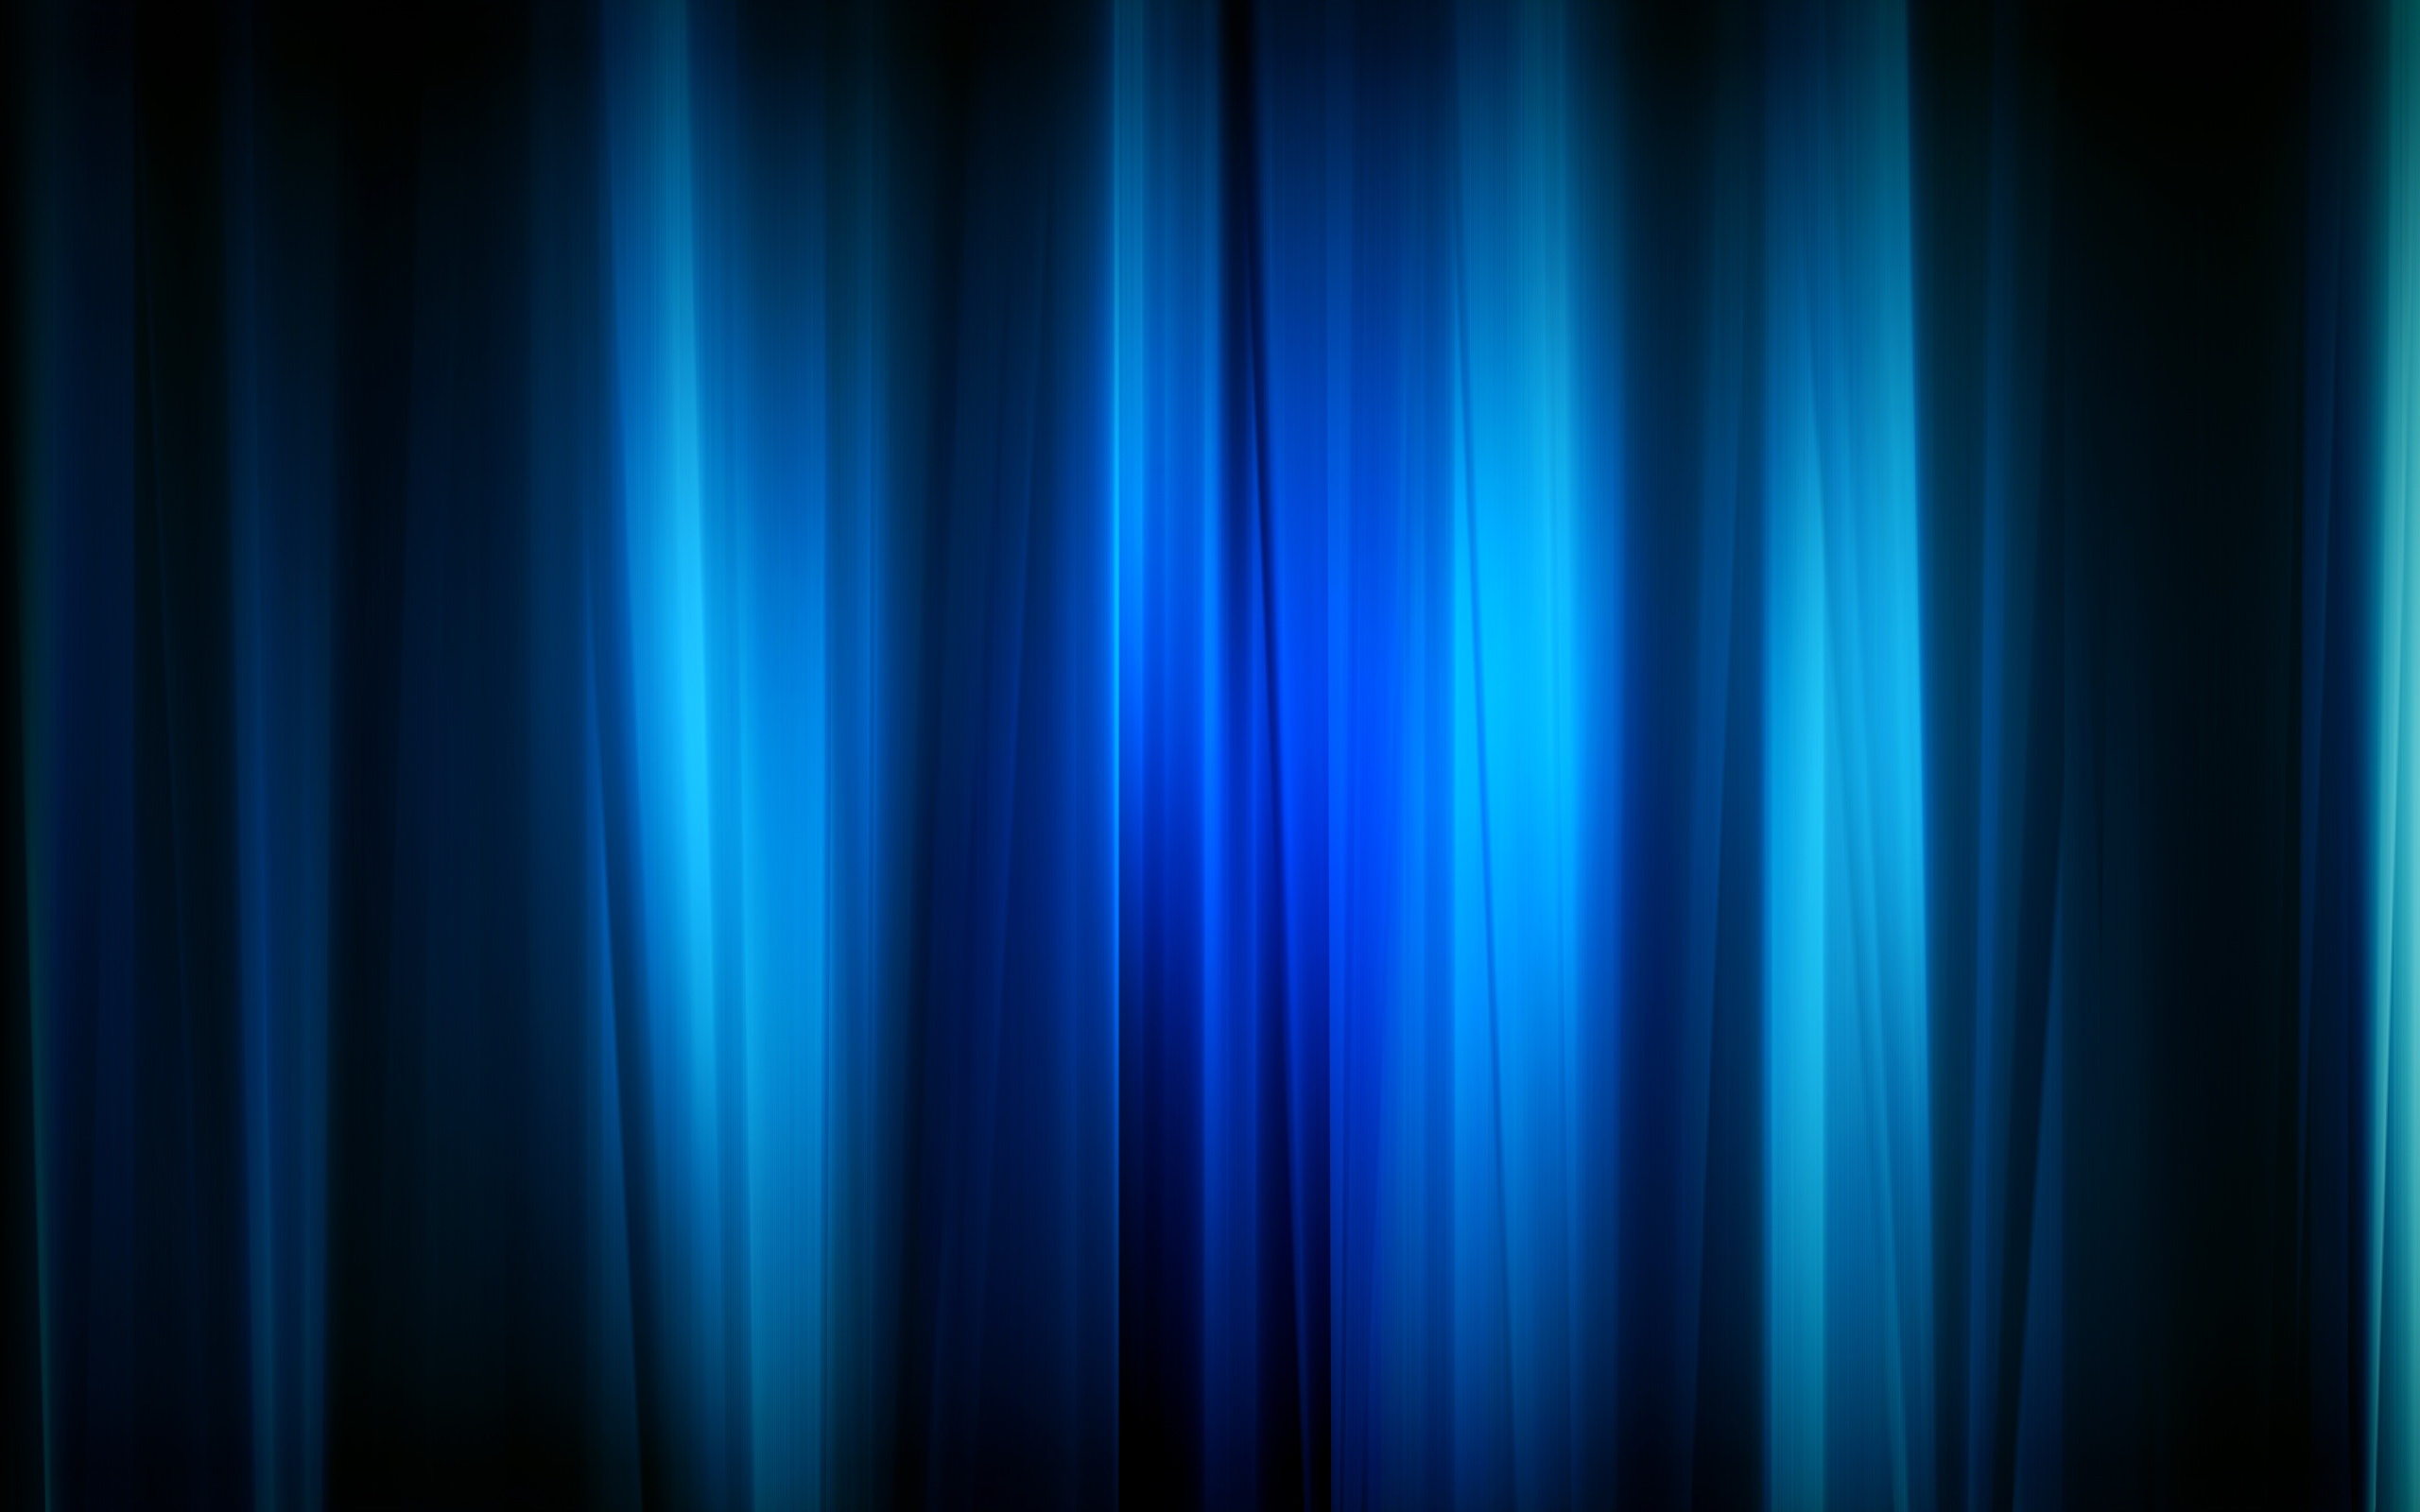 papier peint azul marinho,bleu,noir,bleu électrique,lumière,bleu cobalt